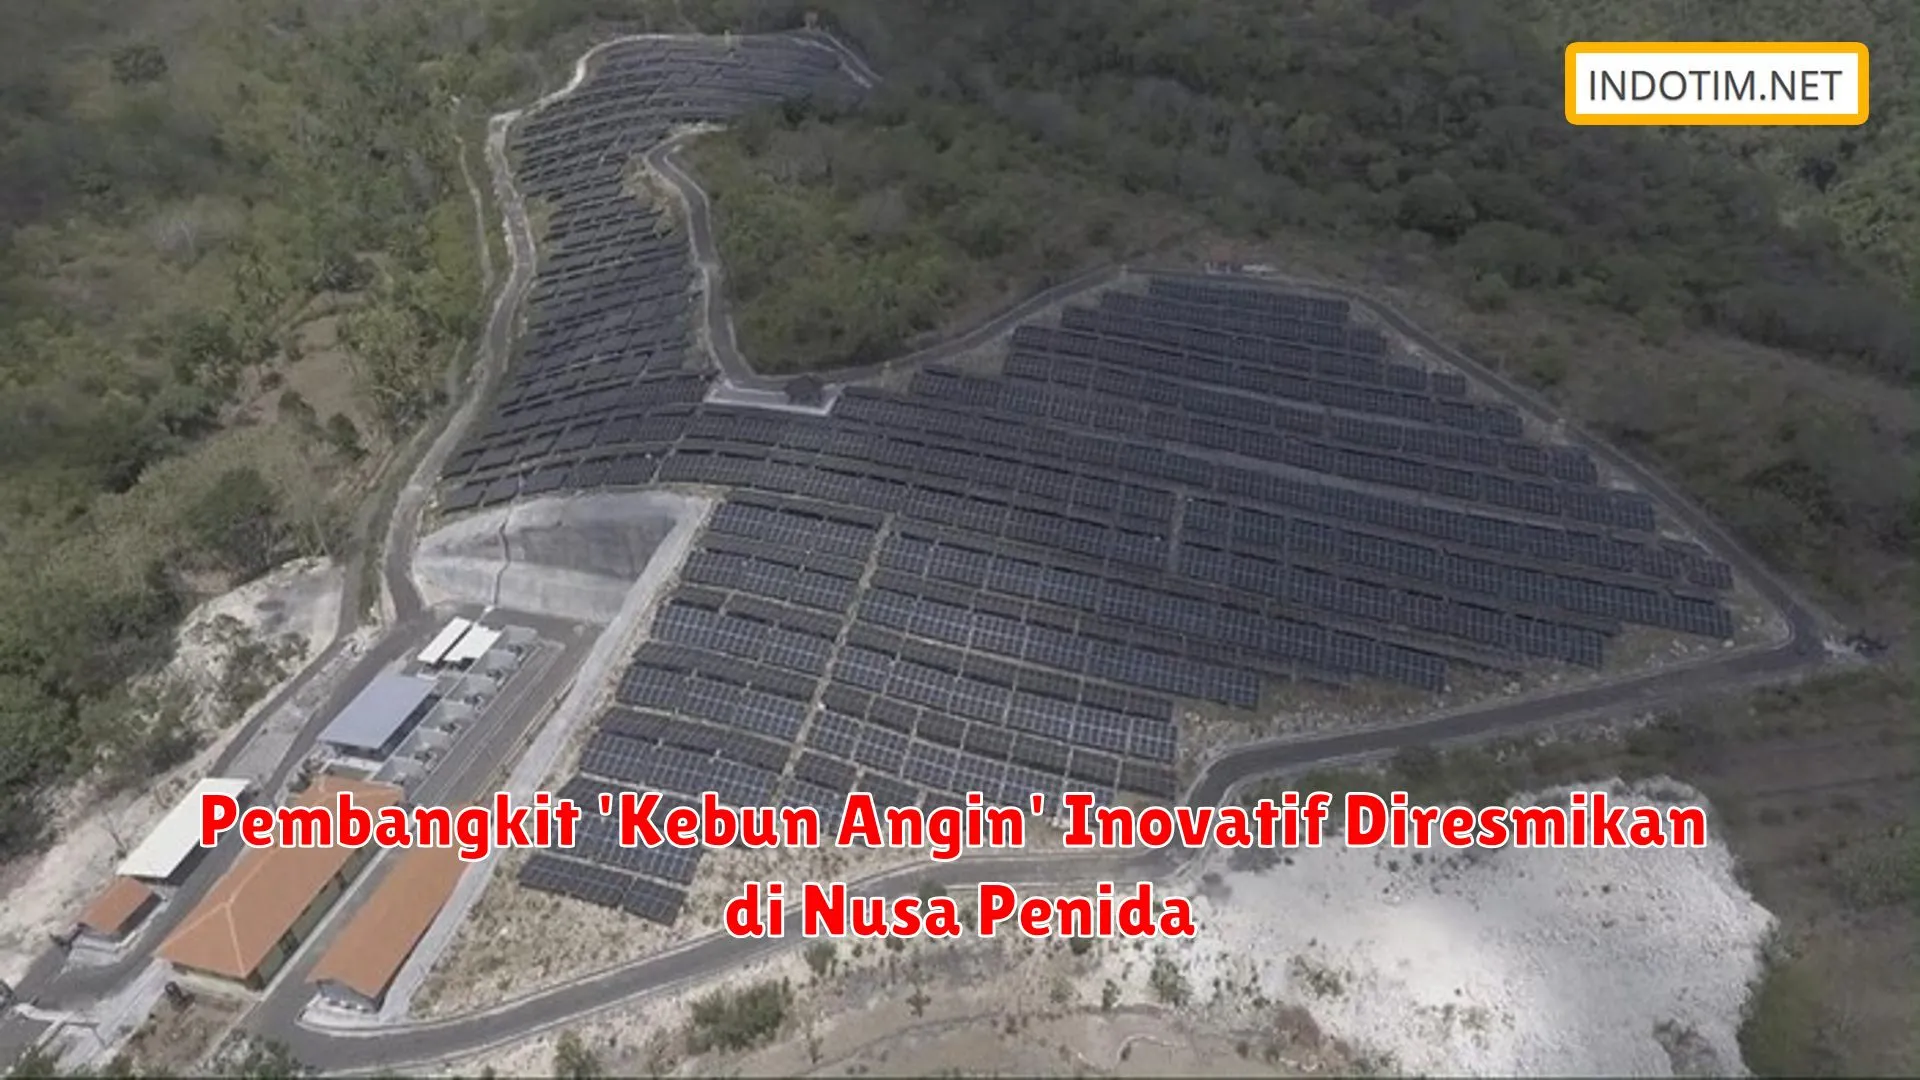 Pembangkit 'Kebun Angin' Inovatif Diresmikan di Nusa Penida